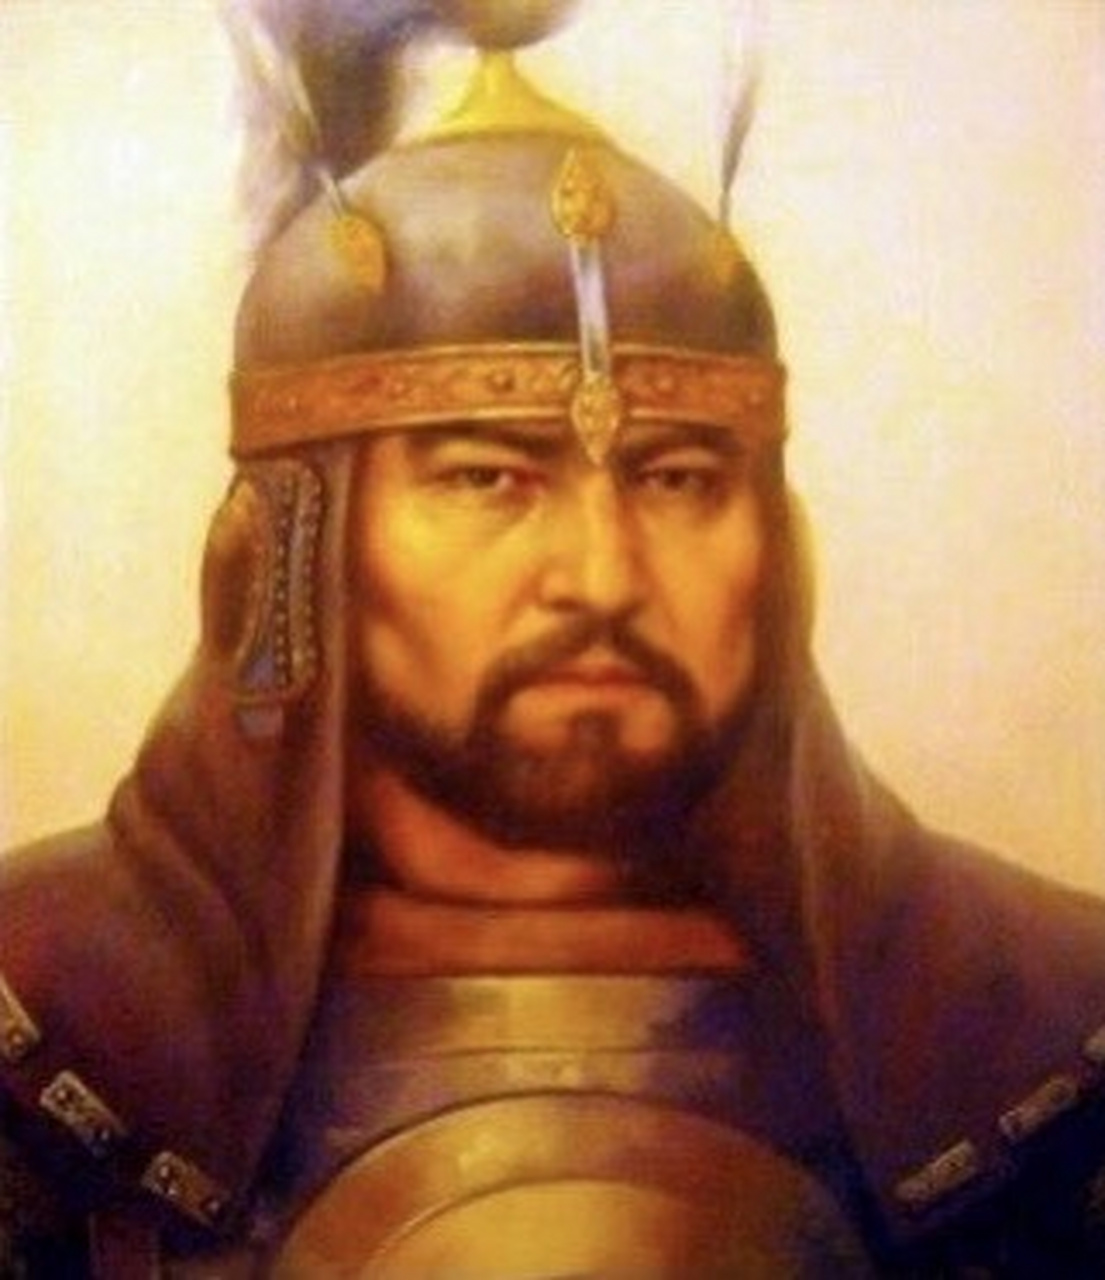 塔武凯勒汗,哈萨克族,是十六世纪哈萨克汗国的可汗之一,执政于1582